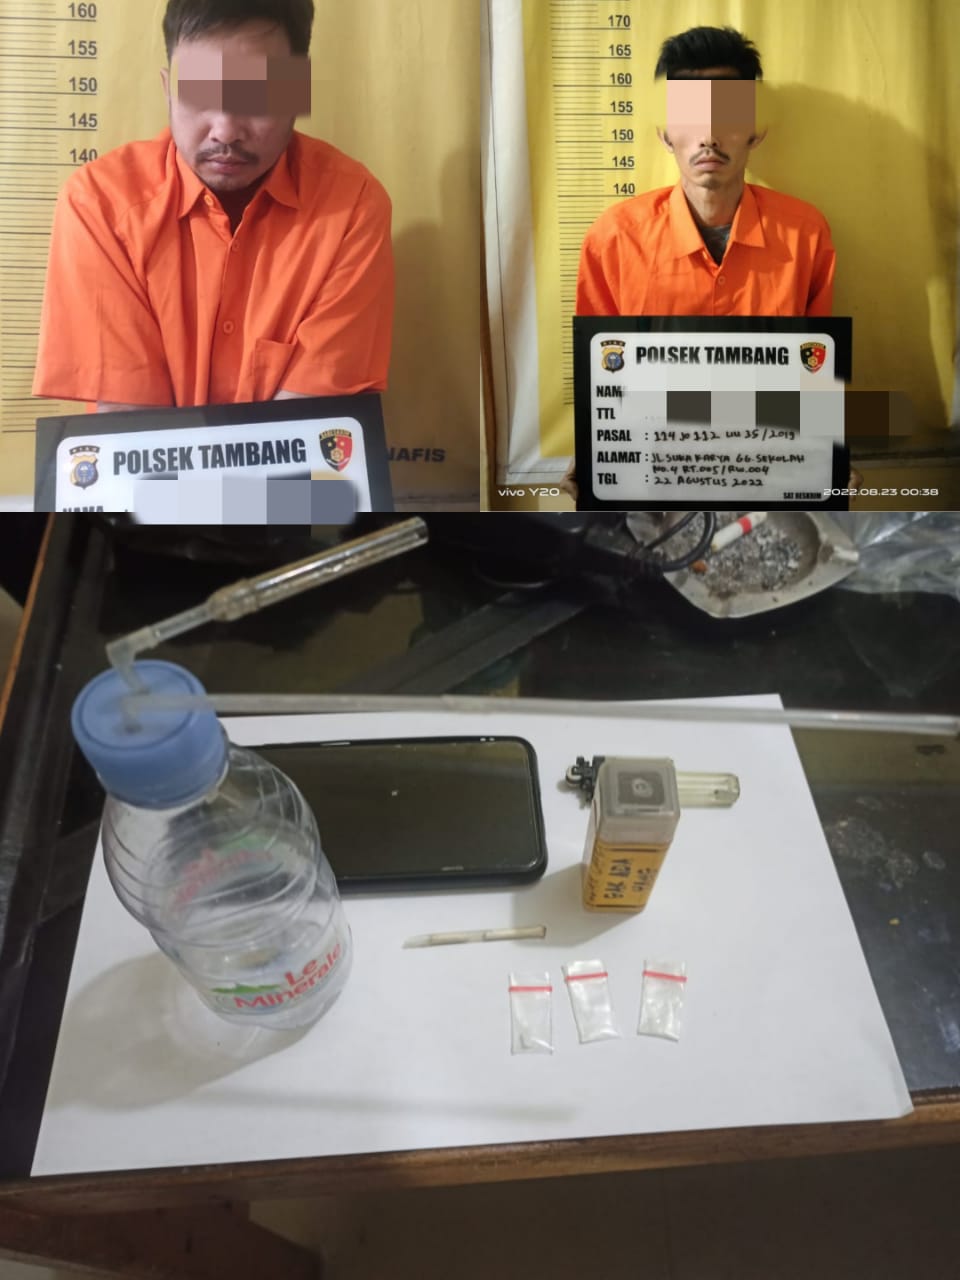 Perumahan Griya Tarai Asri di Obok-Obok, Dua Pelaku Narkoba diamankan